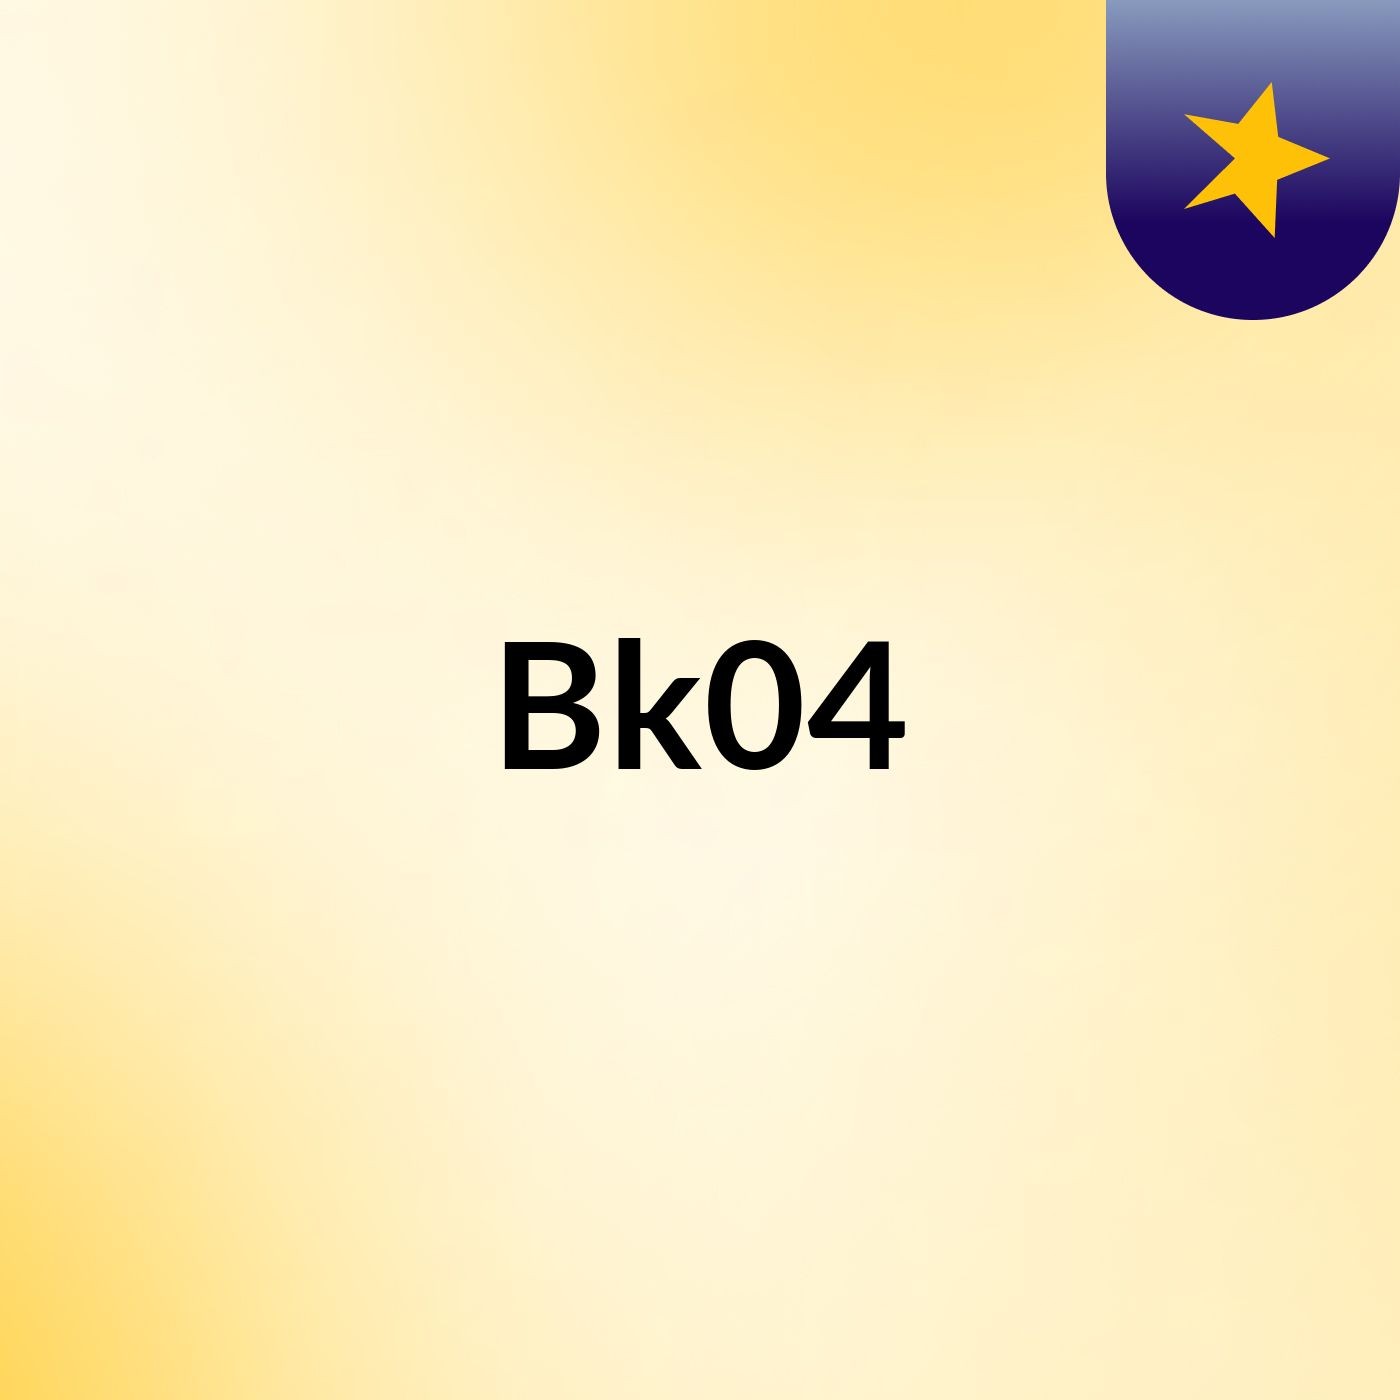 Bk04